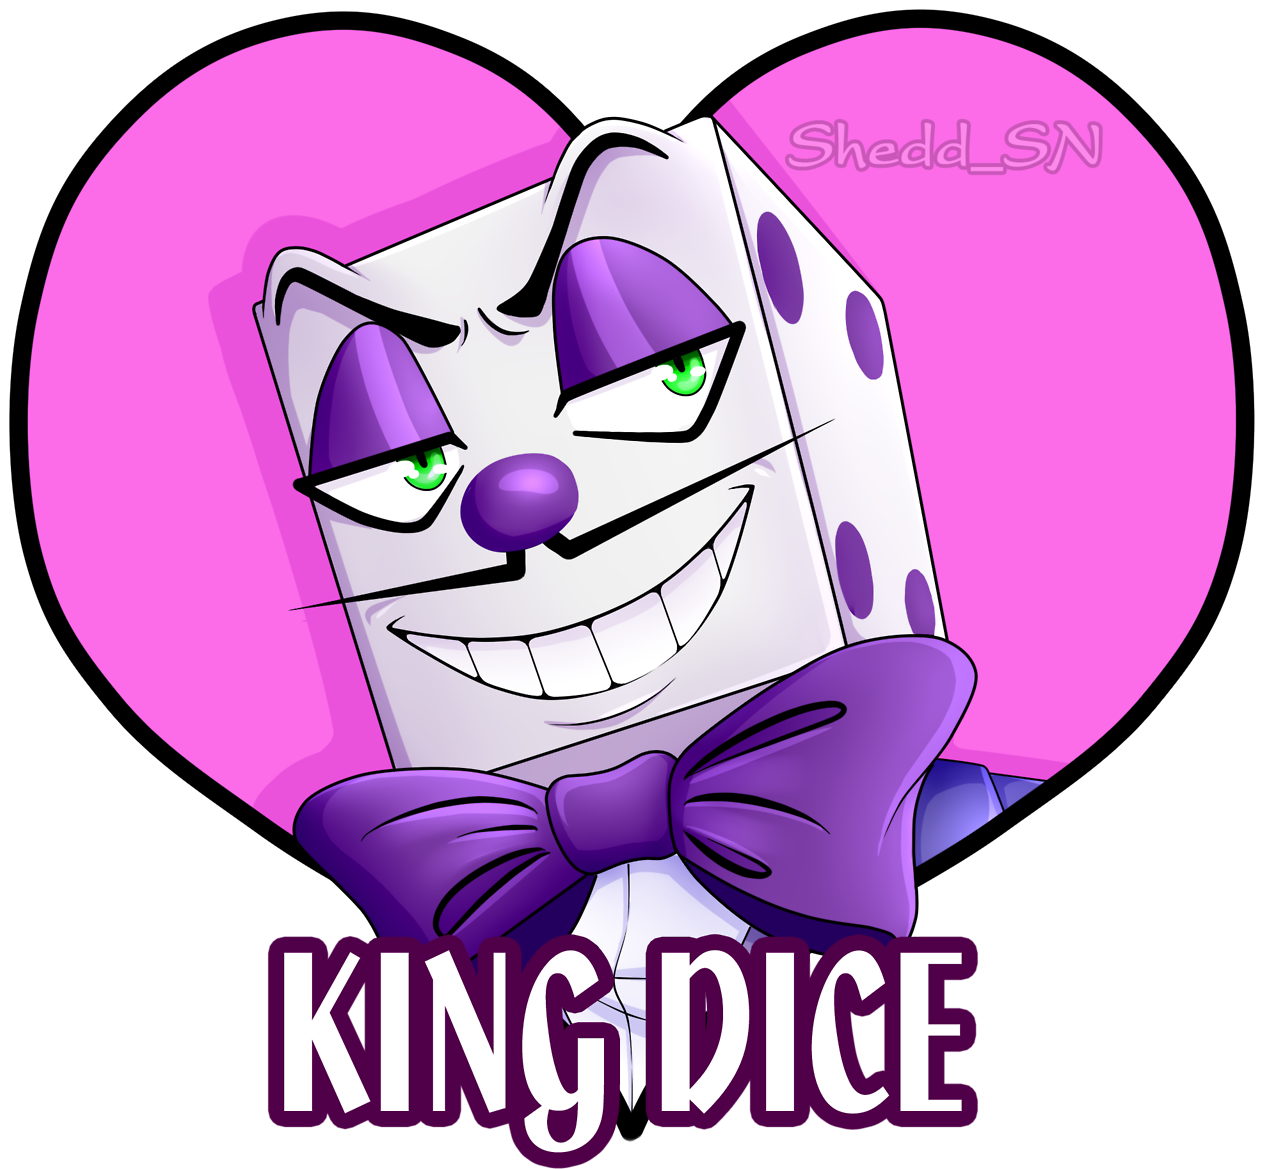 King Dice Kingdice Cuphead King Dice King Dice Cuphead - Devil (1280x1280)